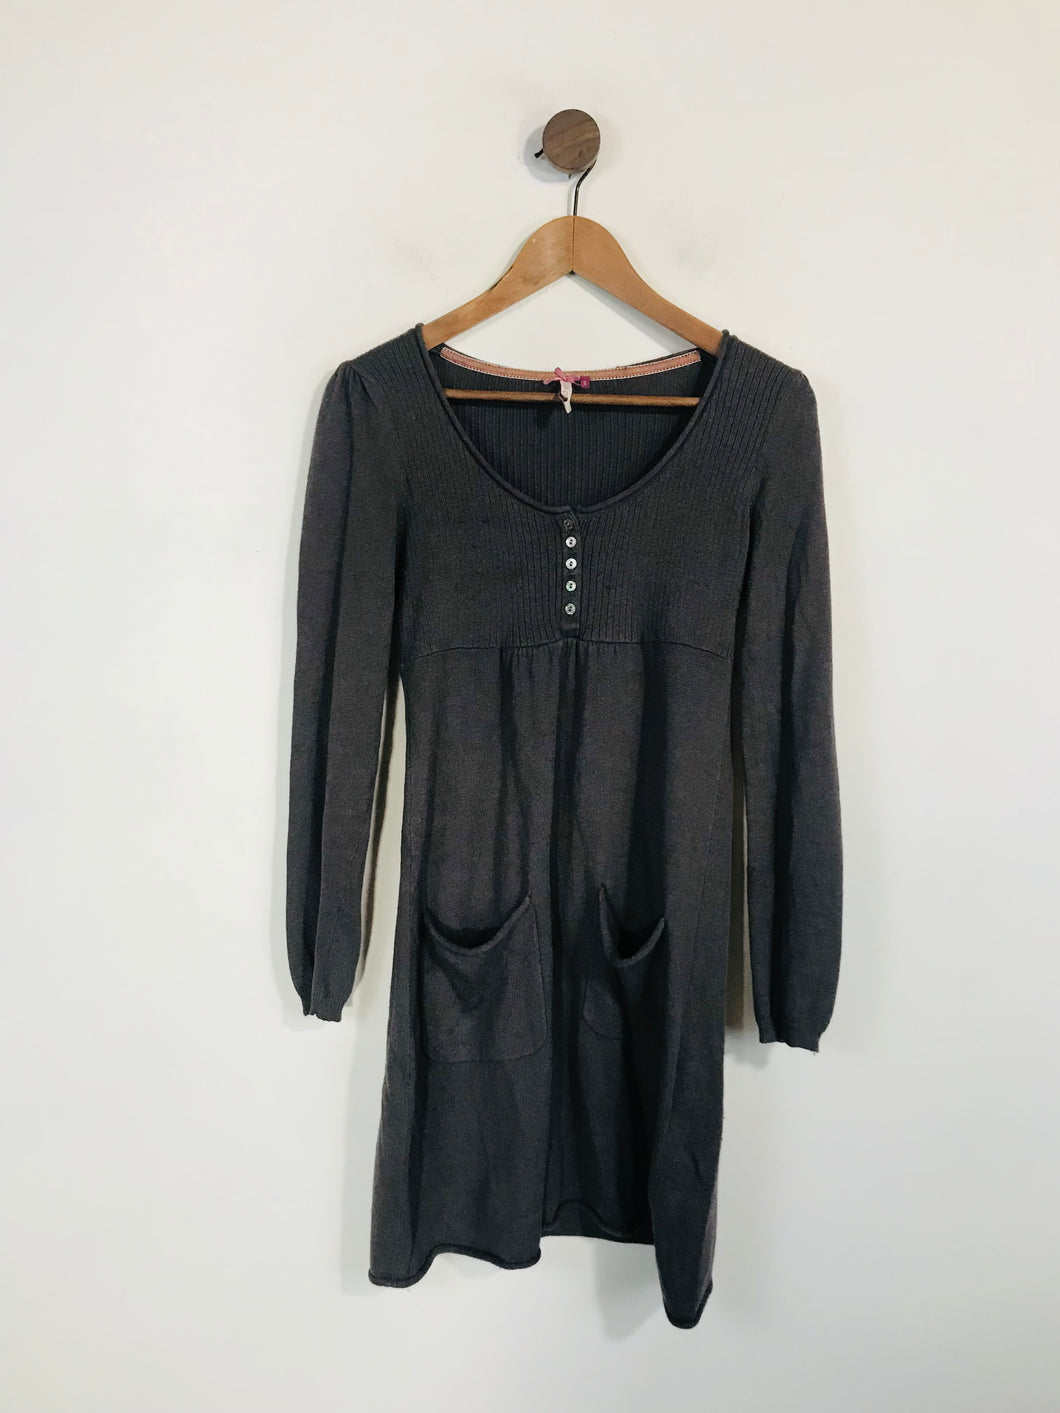 White Stuff Women's Knit Angora Sheath Dress | UK8 | Grey